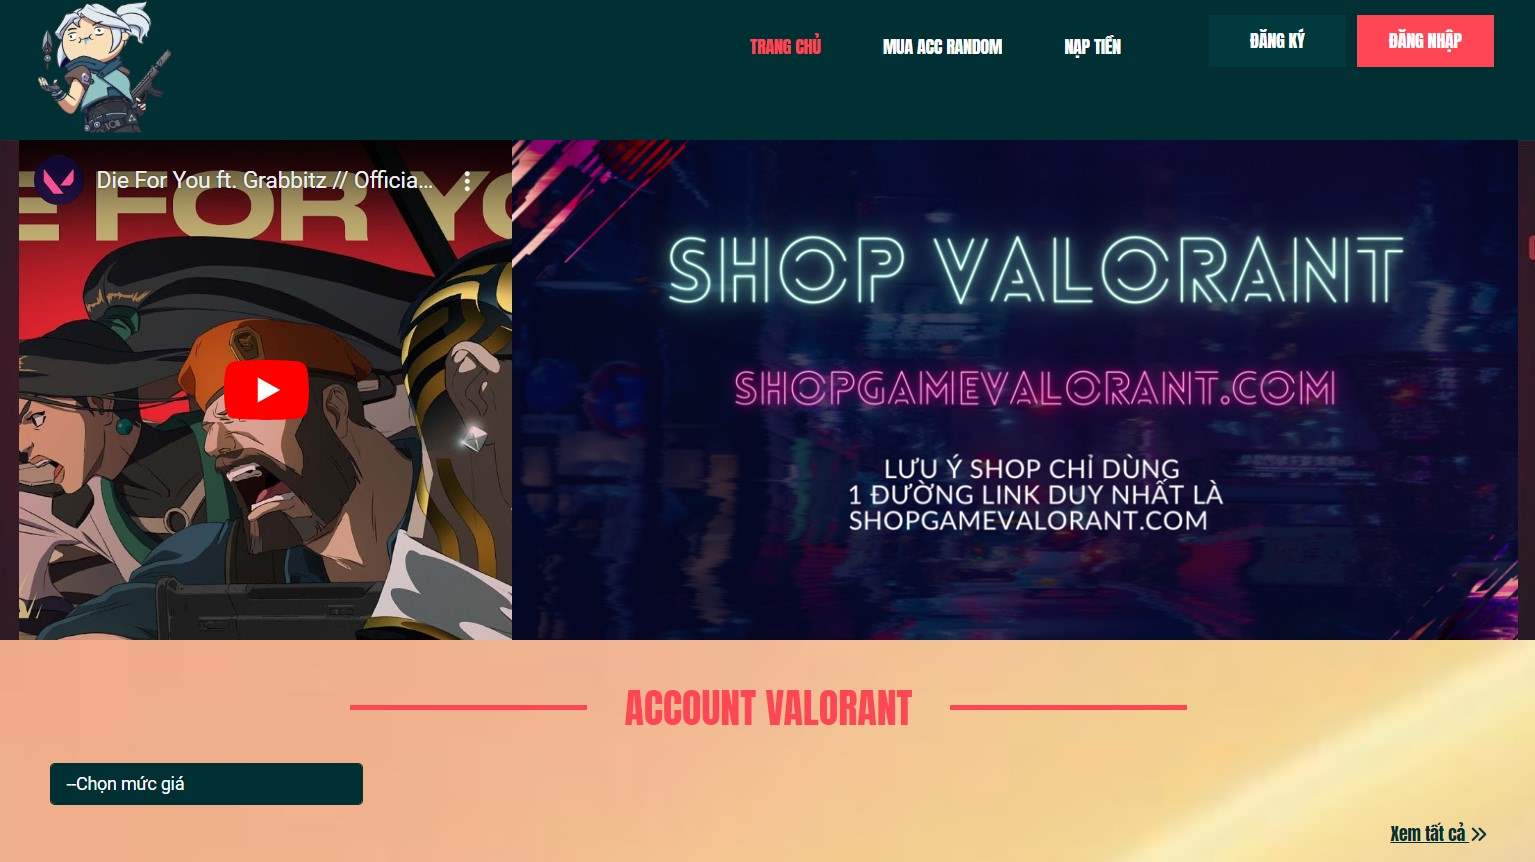 Shop Shopgamevalorant.com